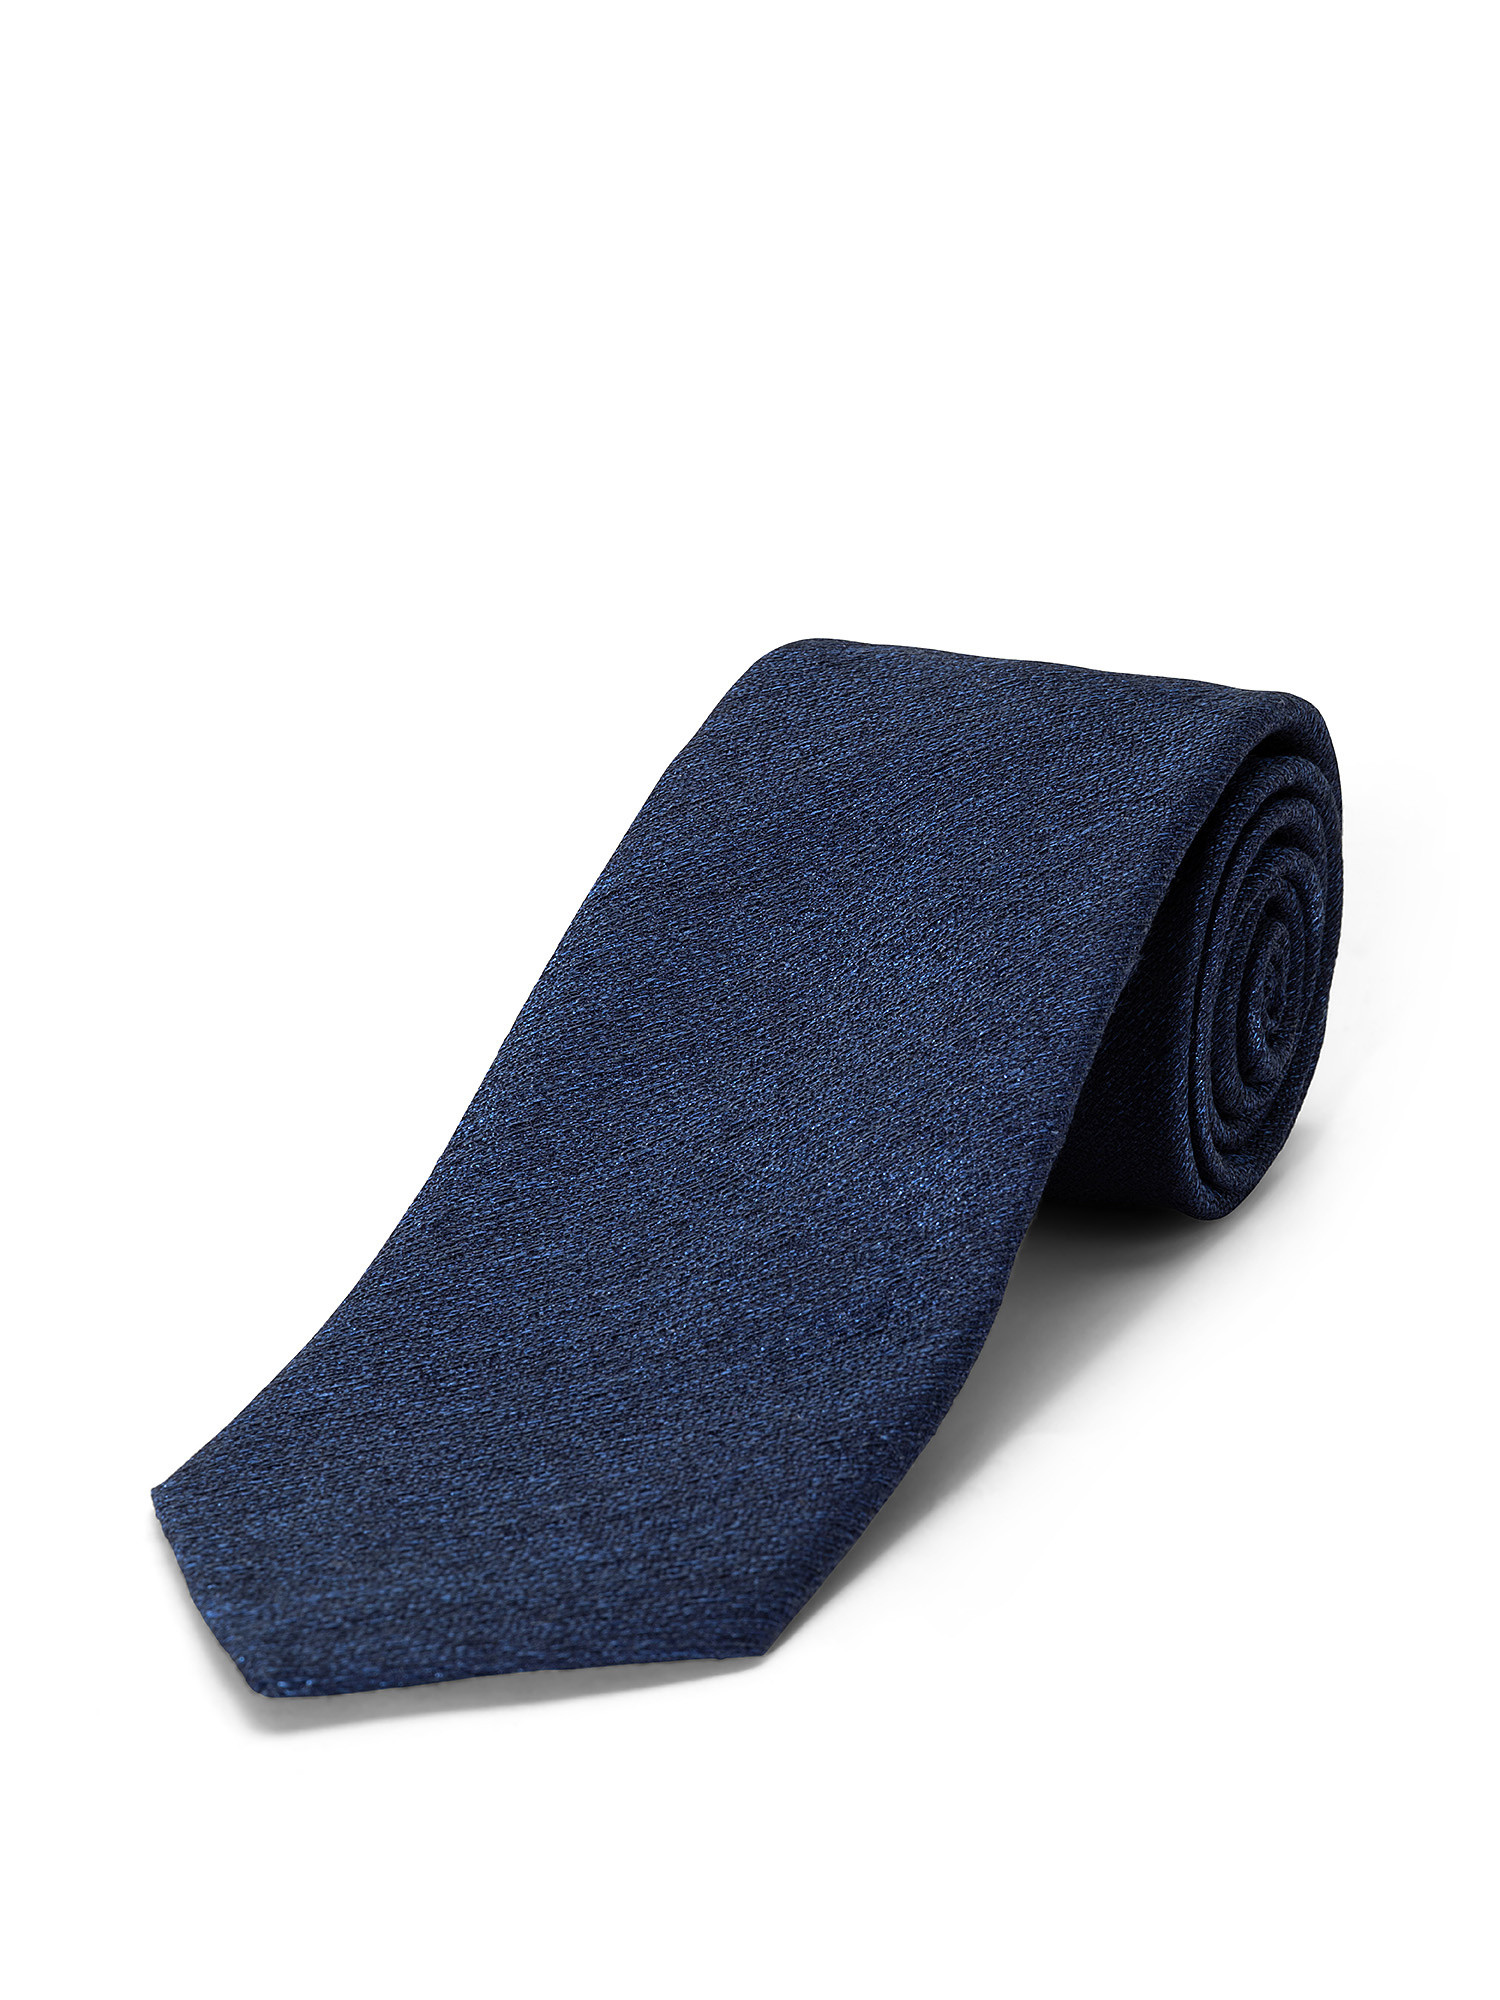 Cravatta in pura seta tinta unita, Blu scuro, large image number 1